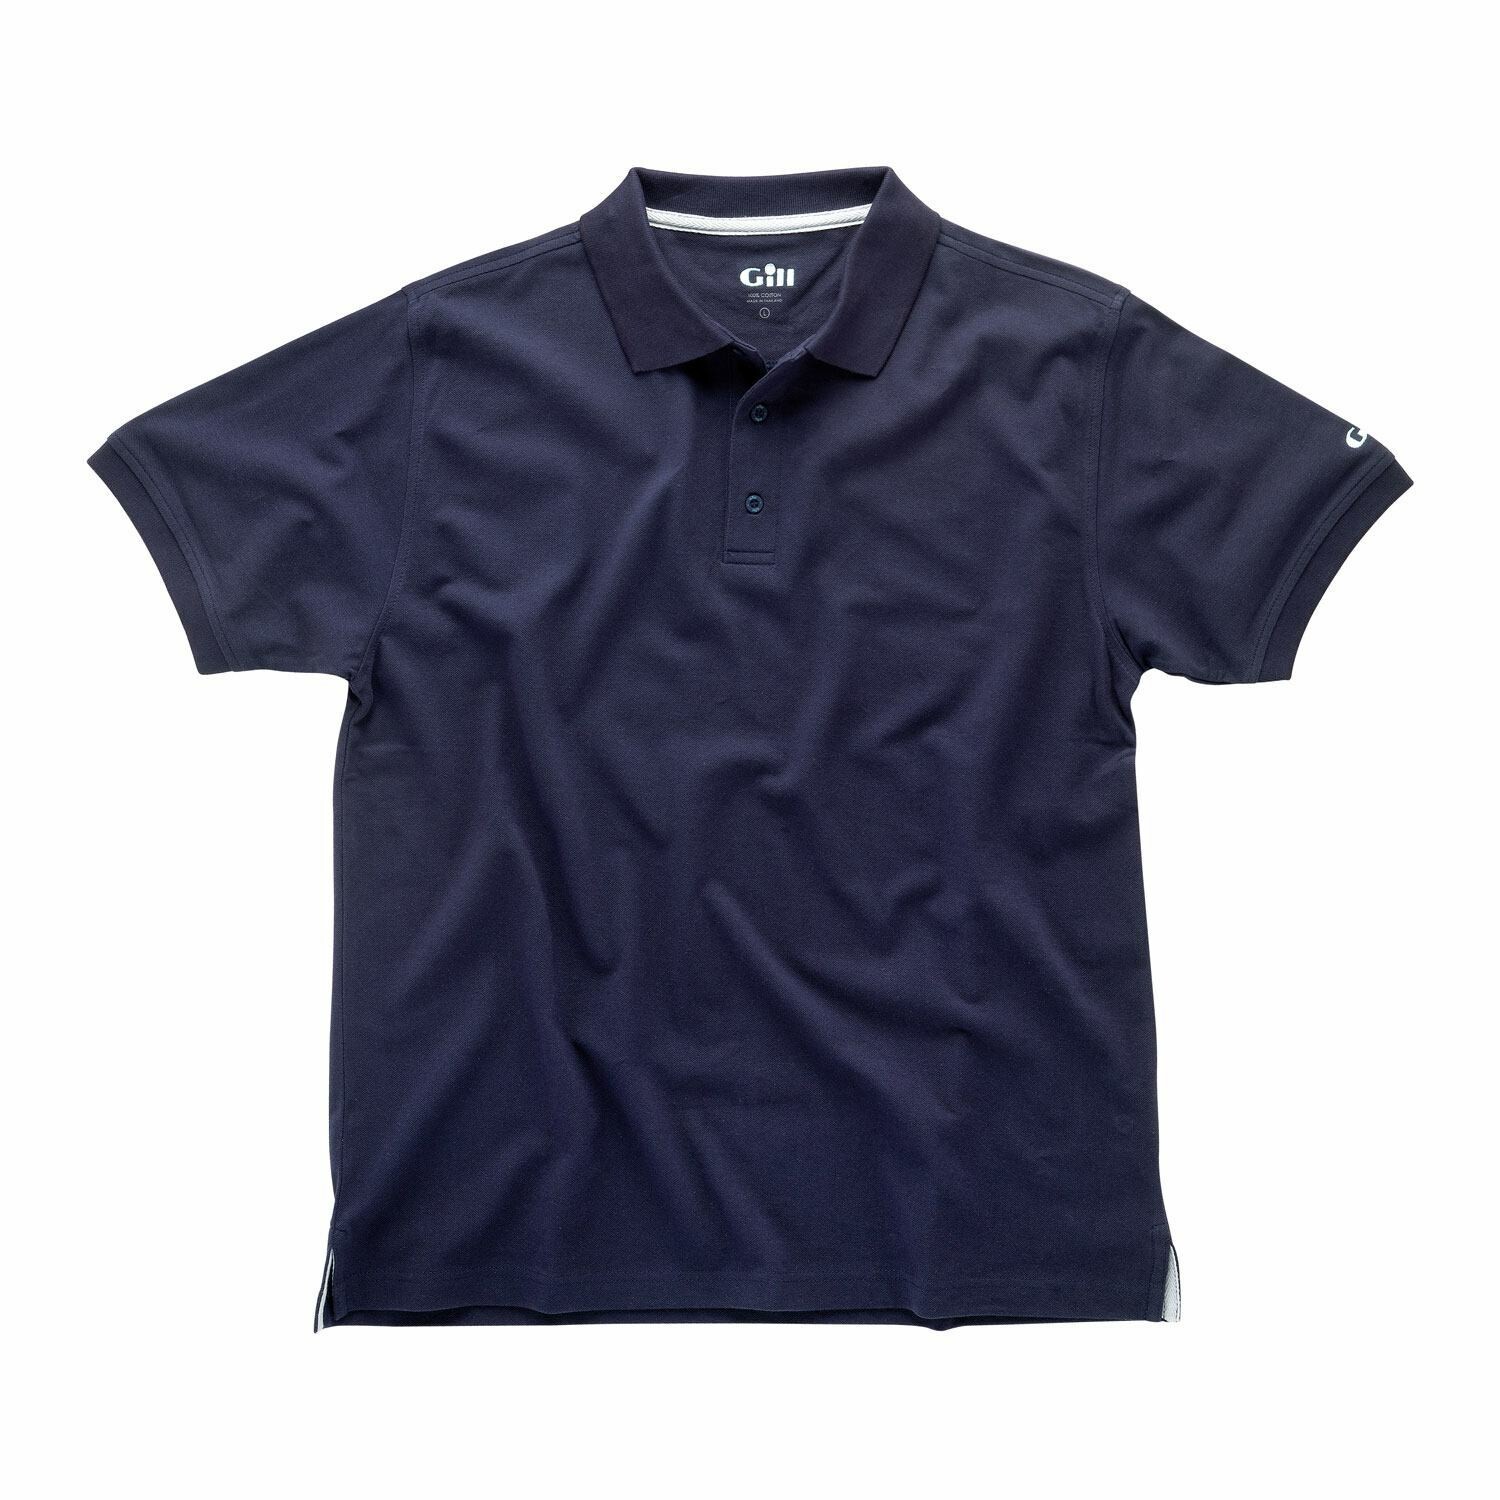 E015 polo shirt Gill navy str s